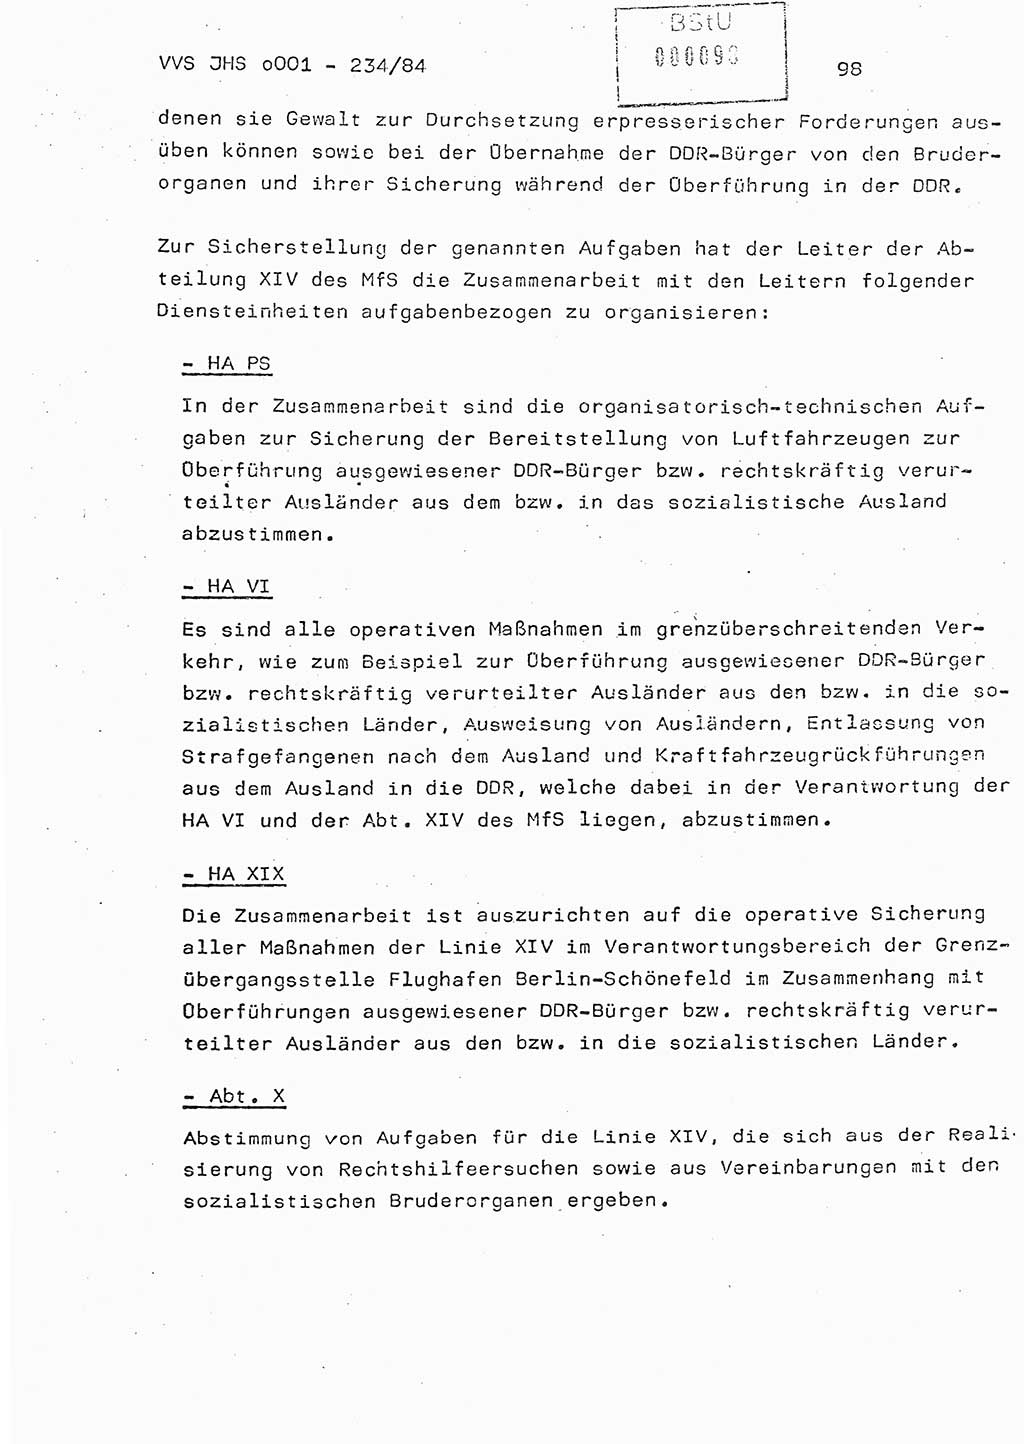 Dissertation Oberst Siegfried Rataizick (Abt. ⅩⅣ), Oberstleutnant Volkmar Heinz (Abt. ⅩⅣ), Oberstleutnant Werner Stein (HA Ⅸ), Hauptmann Heinz Conrad (JHS), Ministerium für Staatssicherheit (MfS) [Deutsche Demokratische Republik (DDR)], Juristische Hochschule (JHS), Vertrauliche Verschlußsache (VVS) o001-234/84, Potsdam 1984, Seite 98 (Diss. MfS DDR JHS VVS o001-234/84 1984, S. 98)